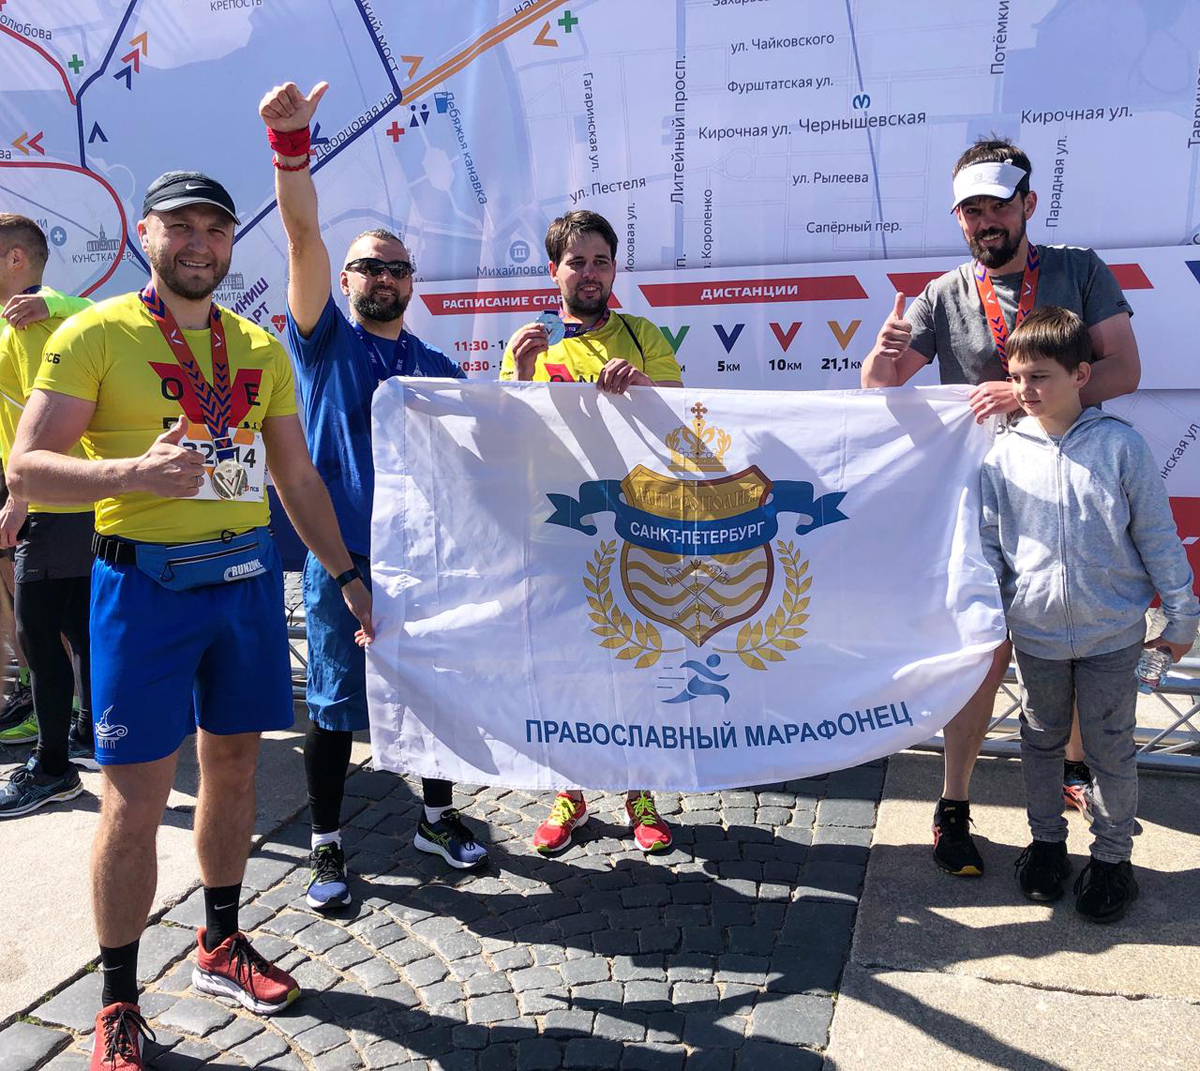 Православныe марафонцы участвовали во всероссийском забеге